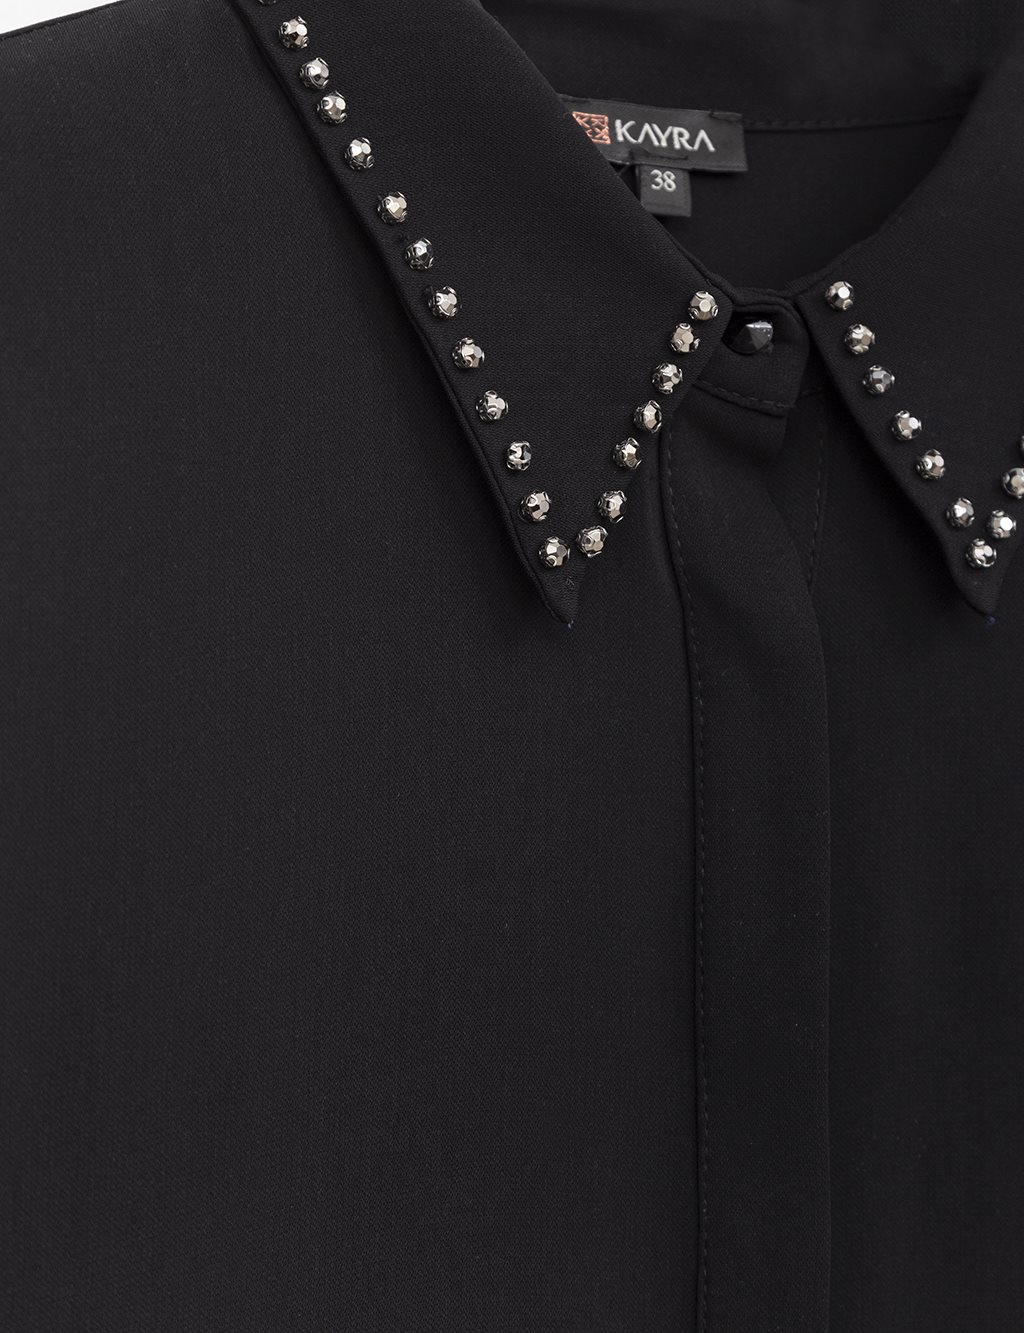 Collar Embellished Paw Concealed Shirt Black